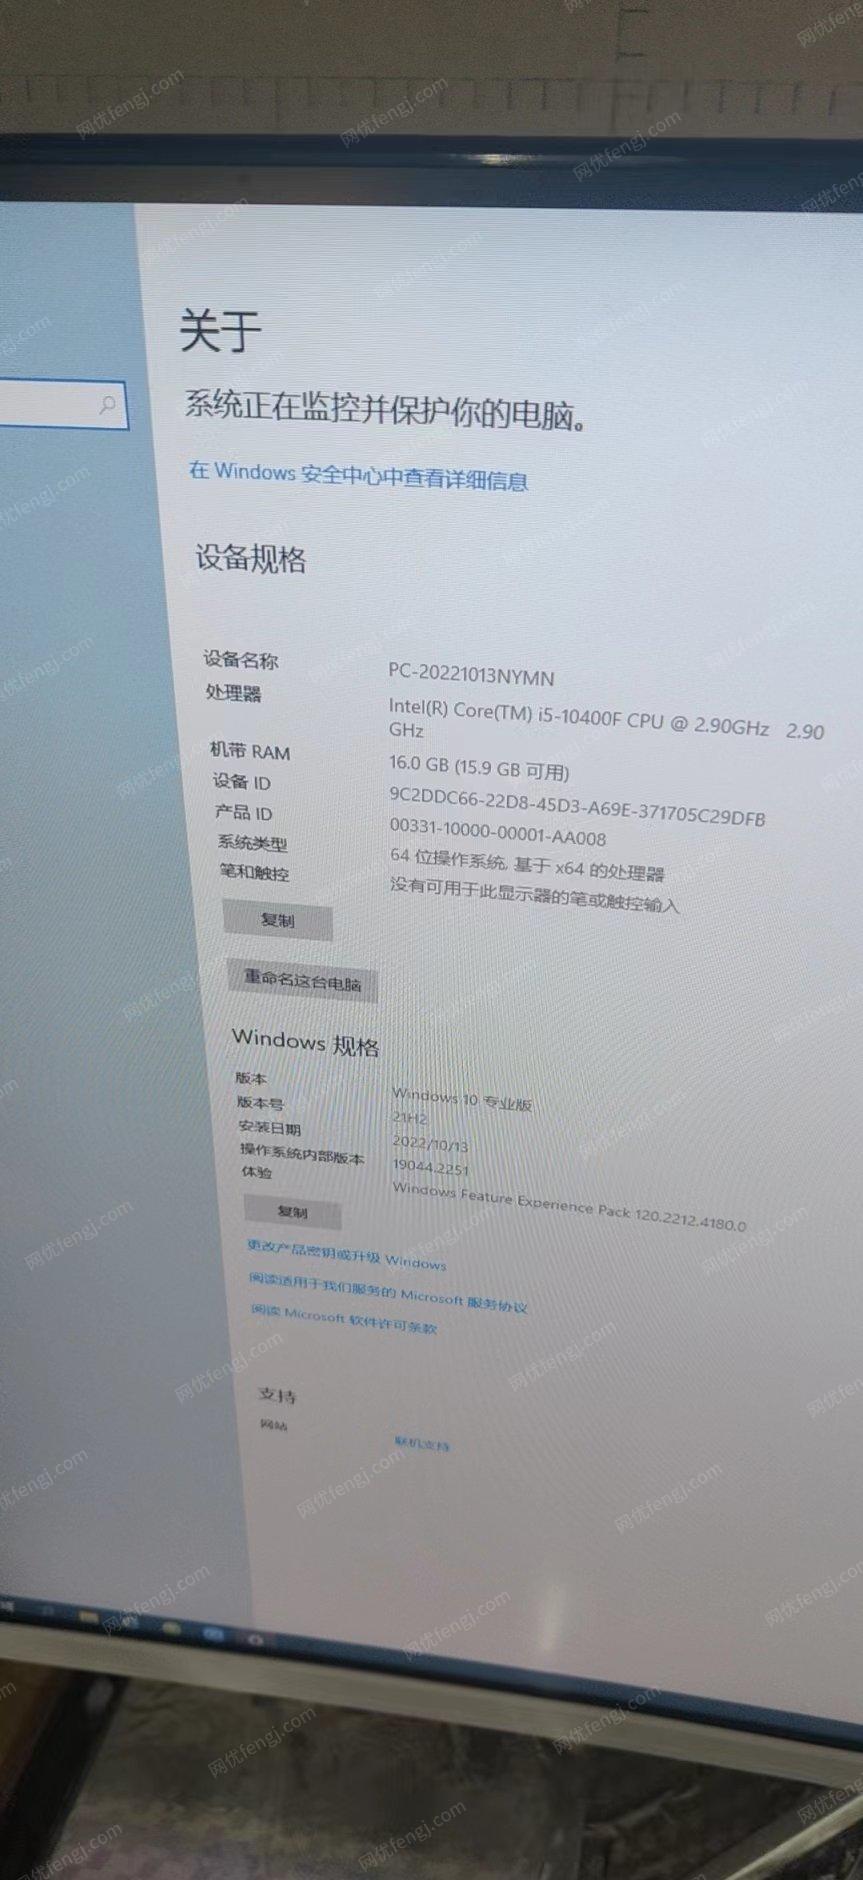 吉林辽源个人台式电脑9.9成新低价出售